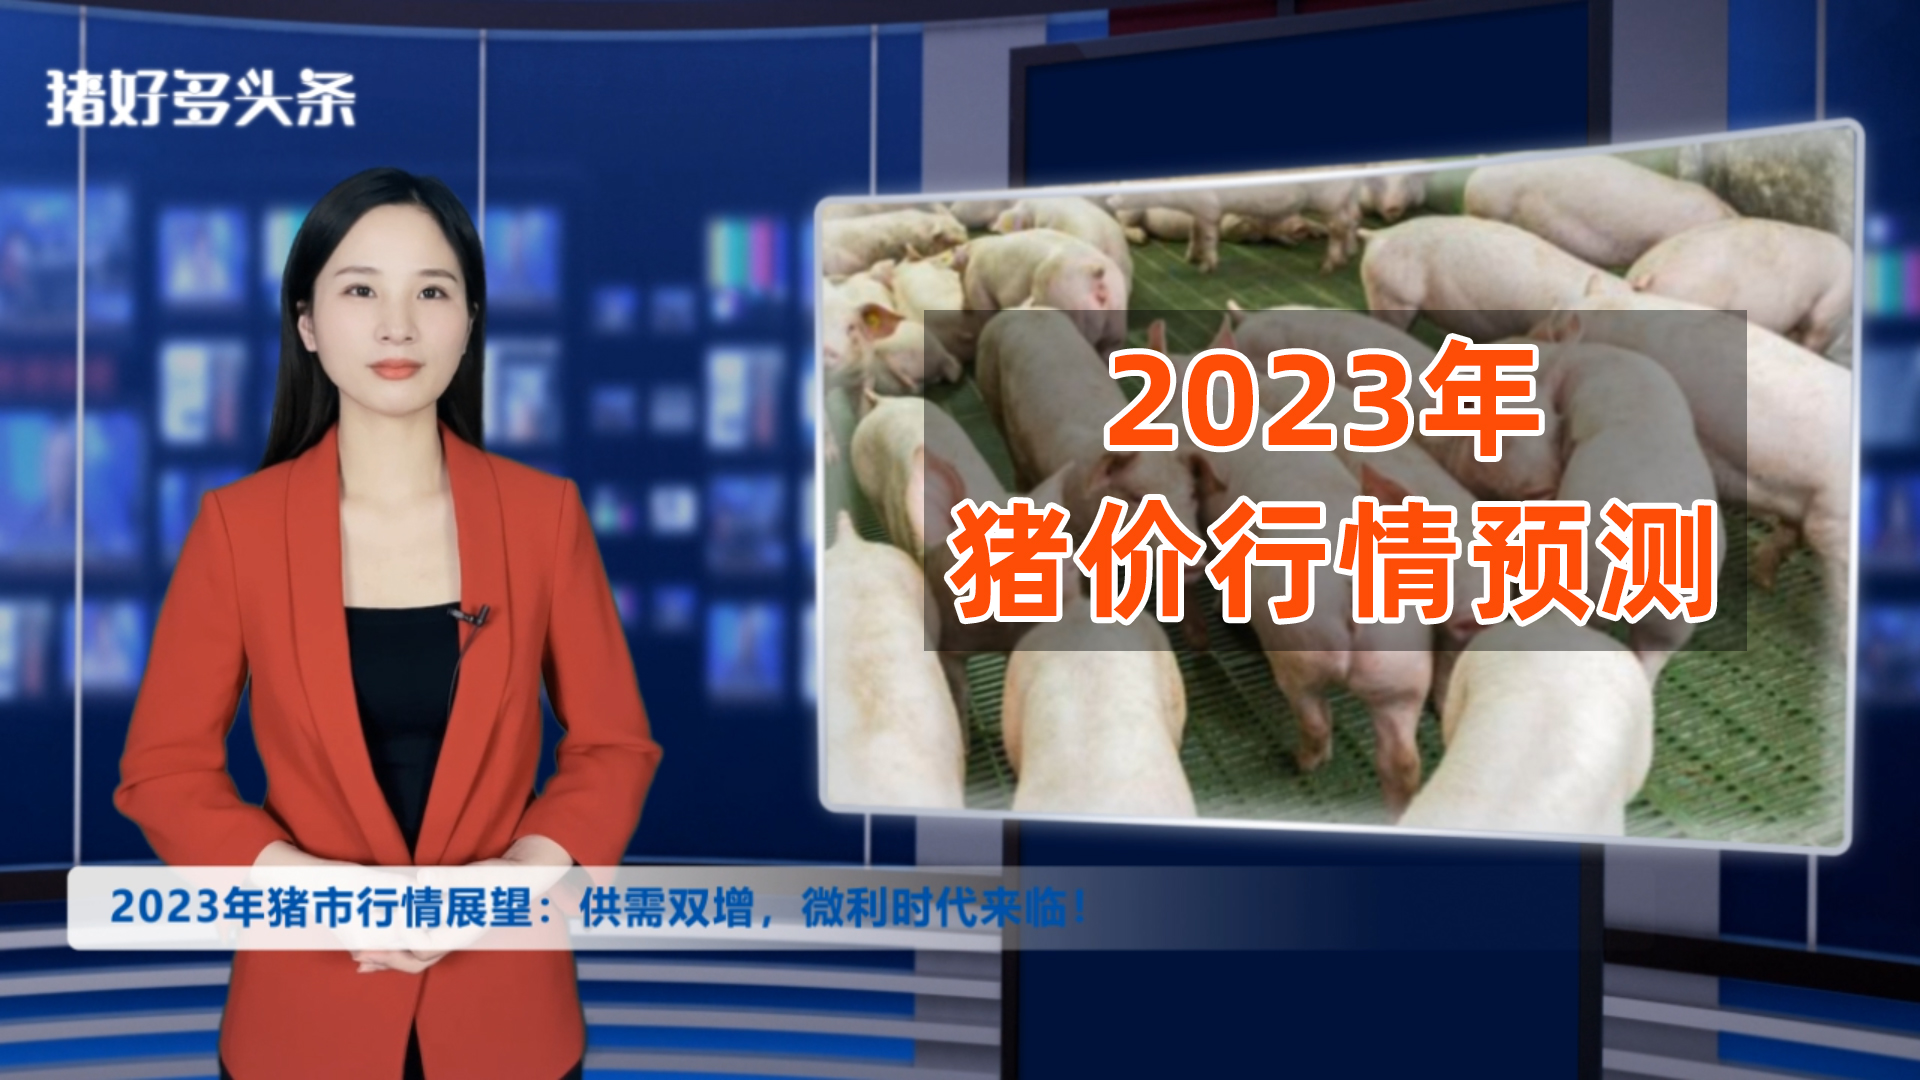 4388万头！能繁母猪存栏连增6个月！2023年猪价能创惊喜吗？